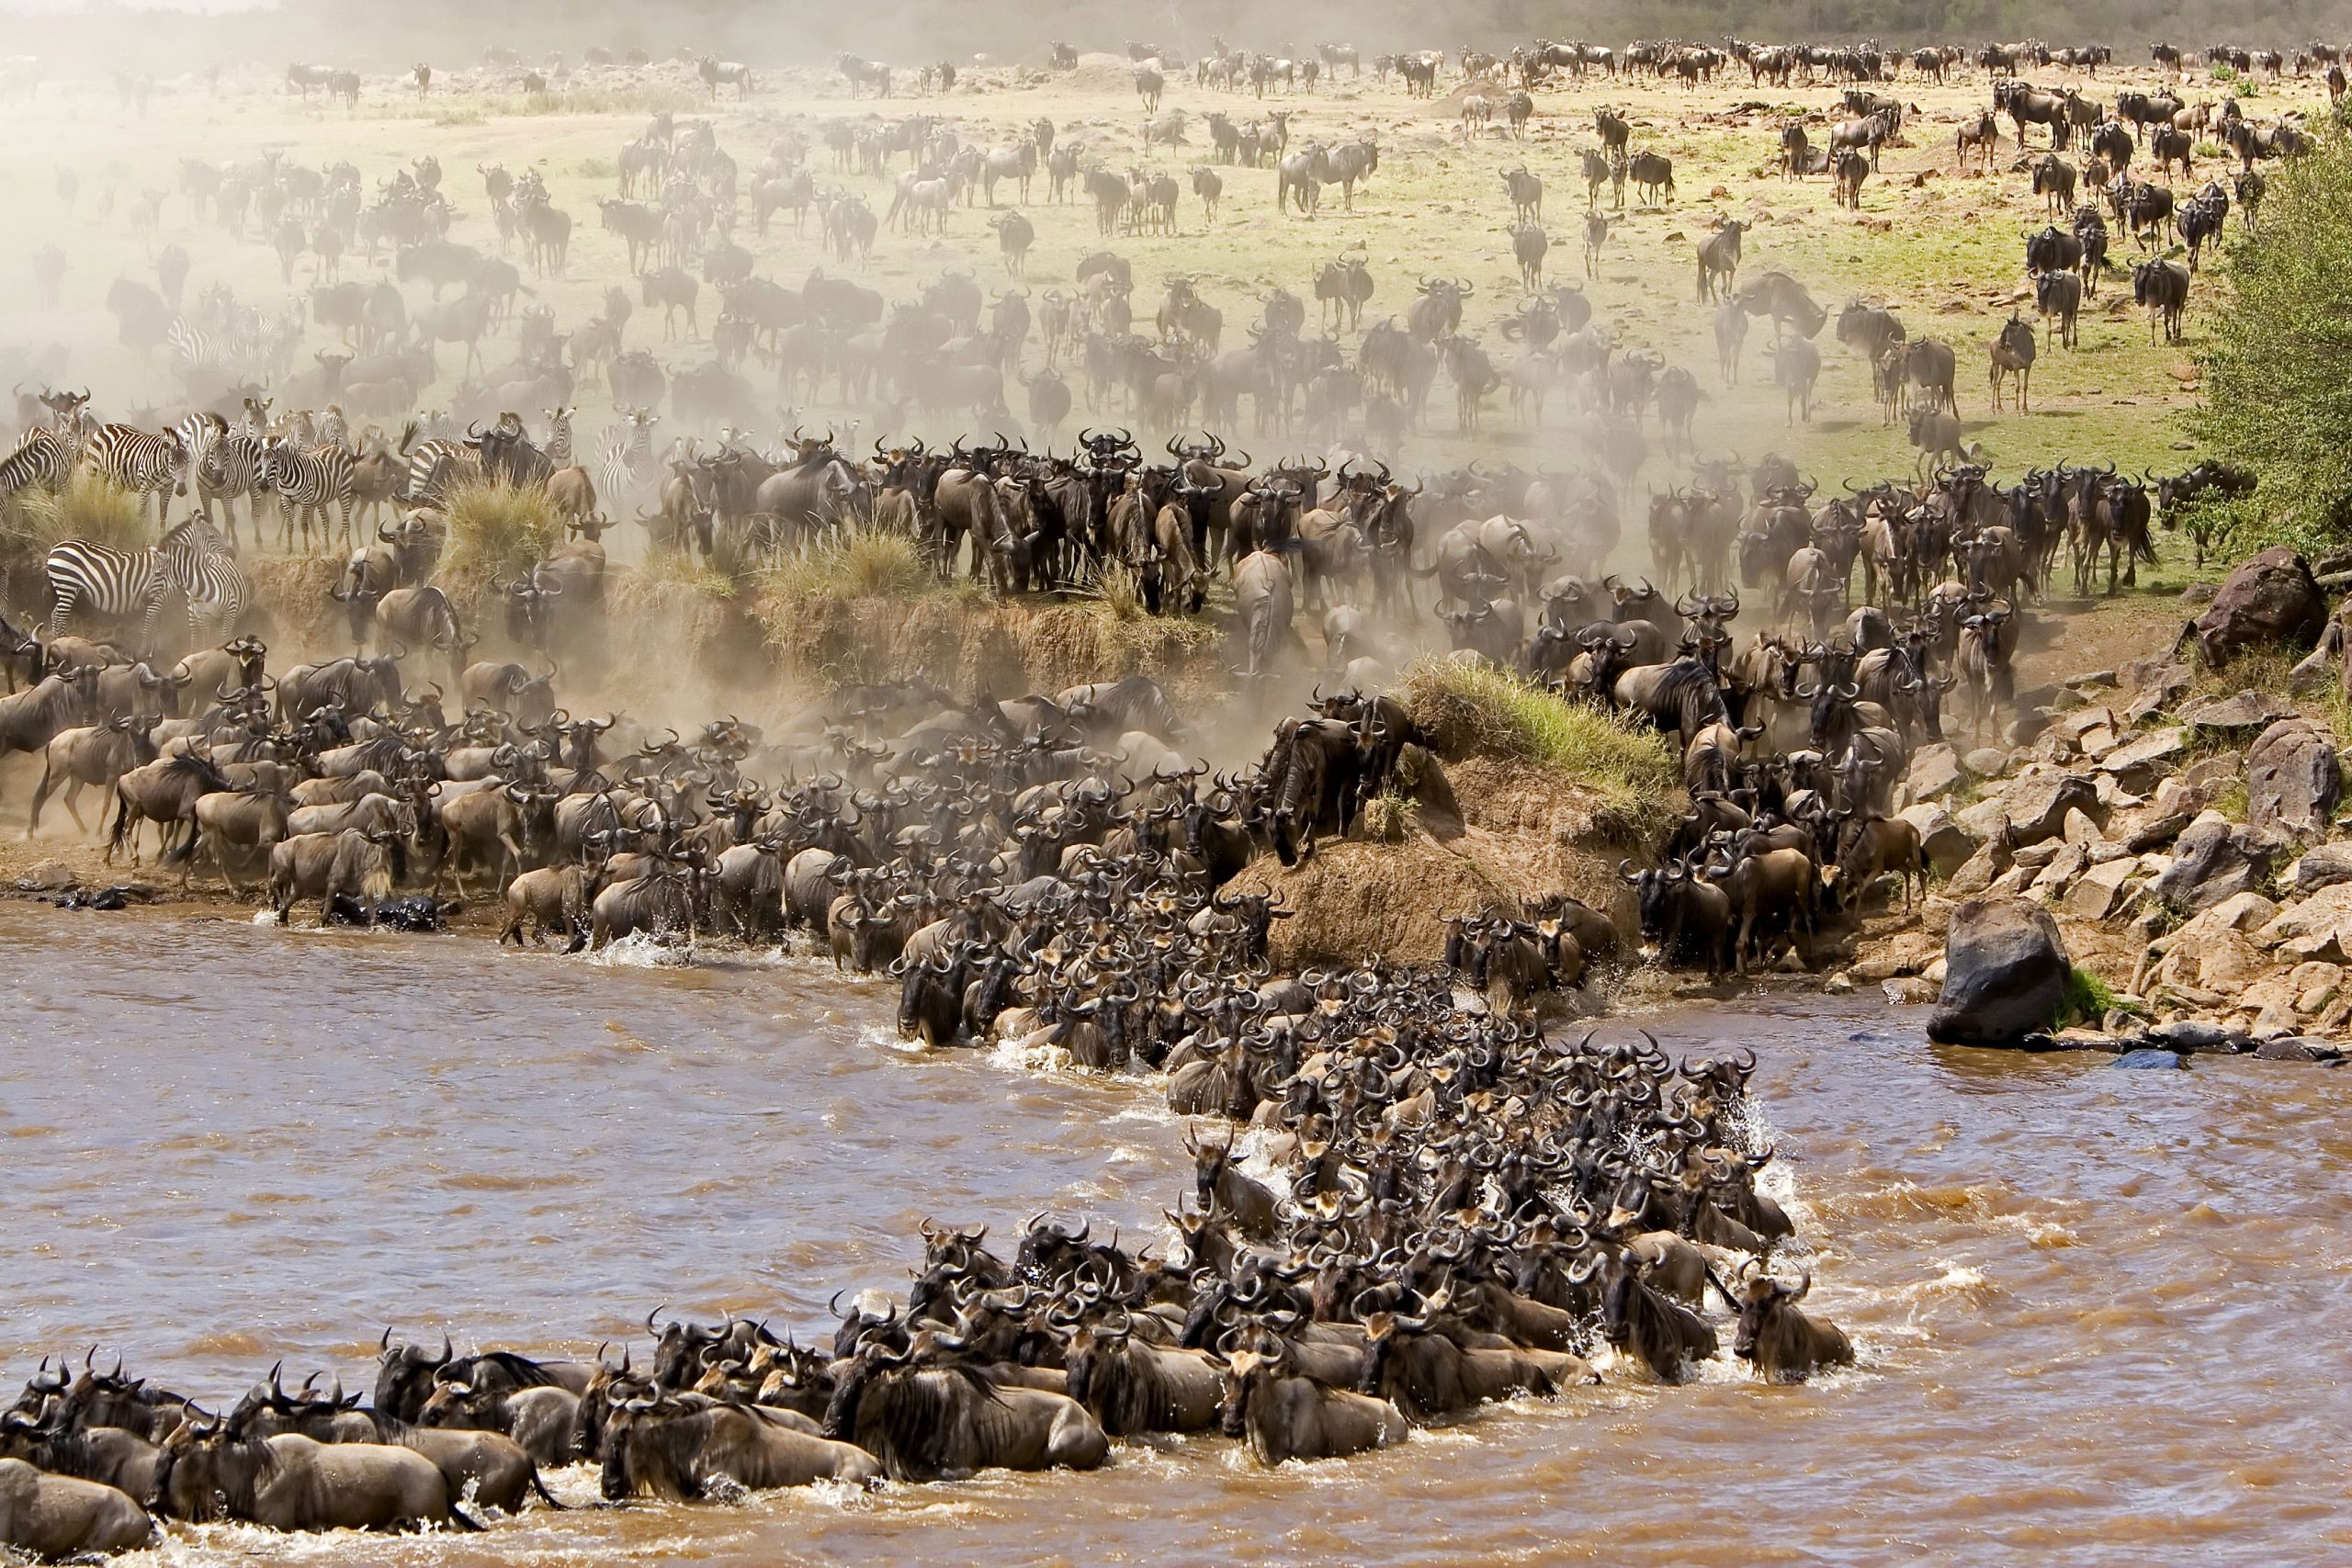 https://www.praygodafricasafaris.com/5-days-wildebeest-migration-serengeti/